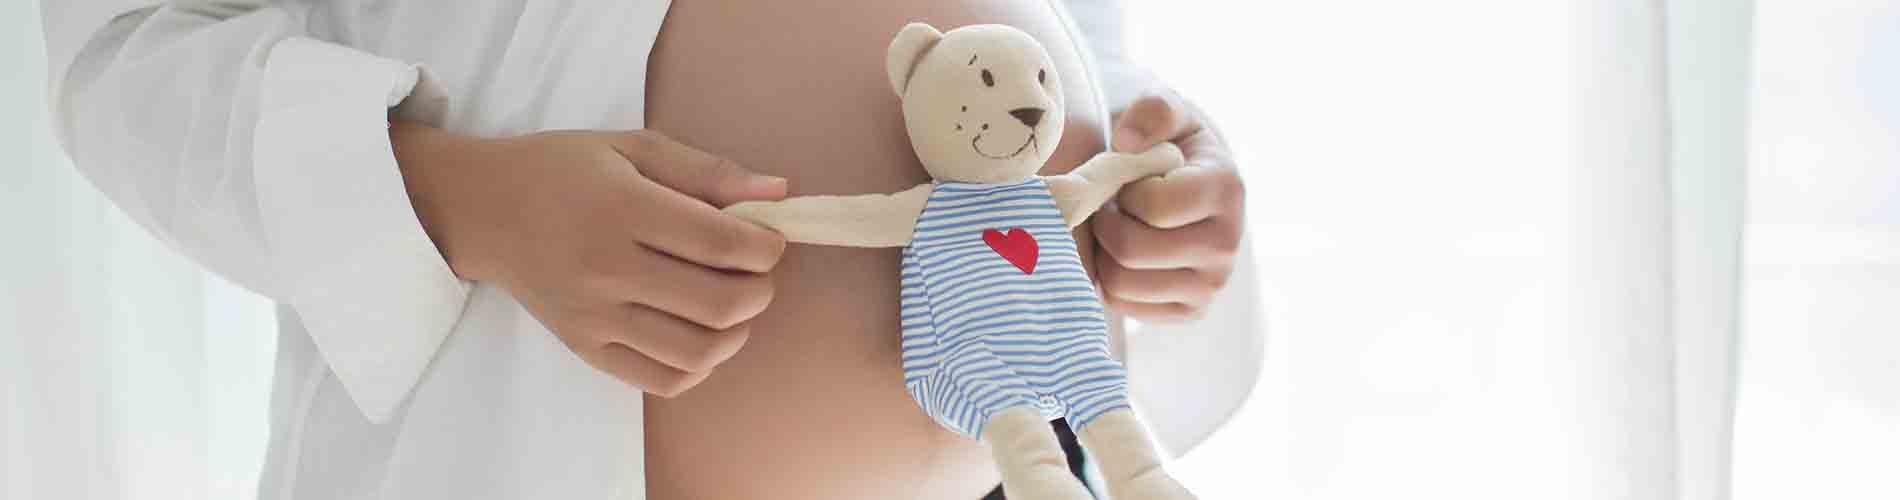 El riesgo de gingivitis y caries aumenta durante el embarazo